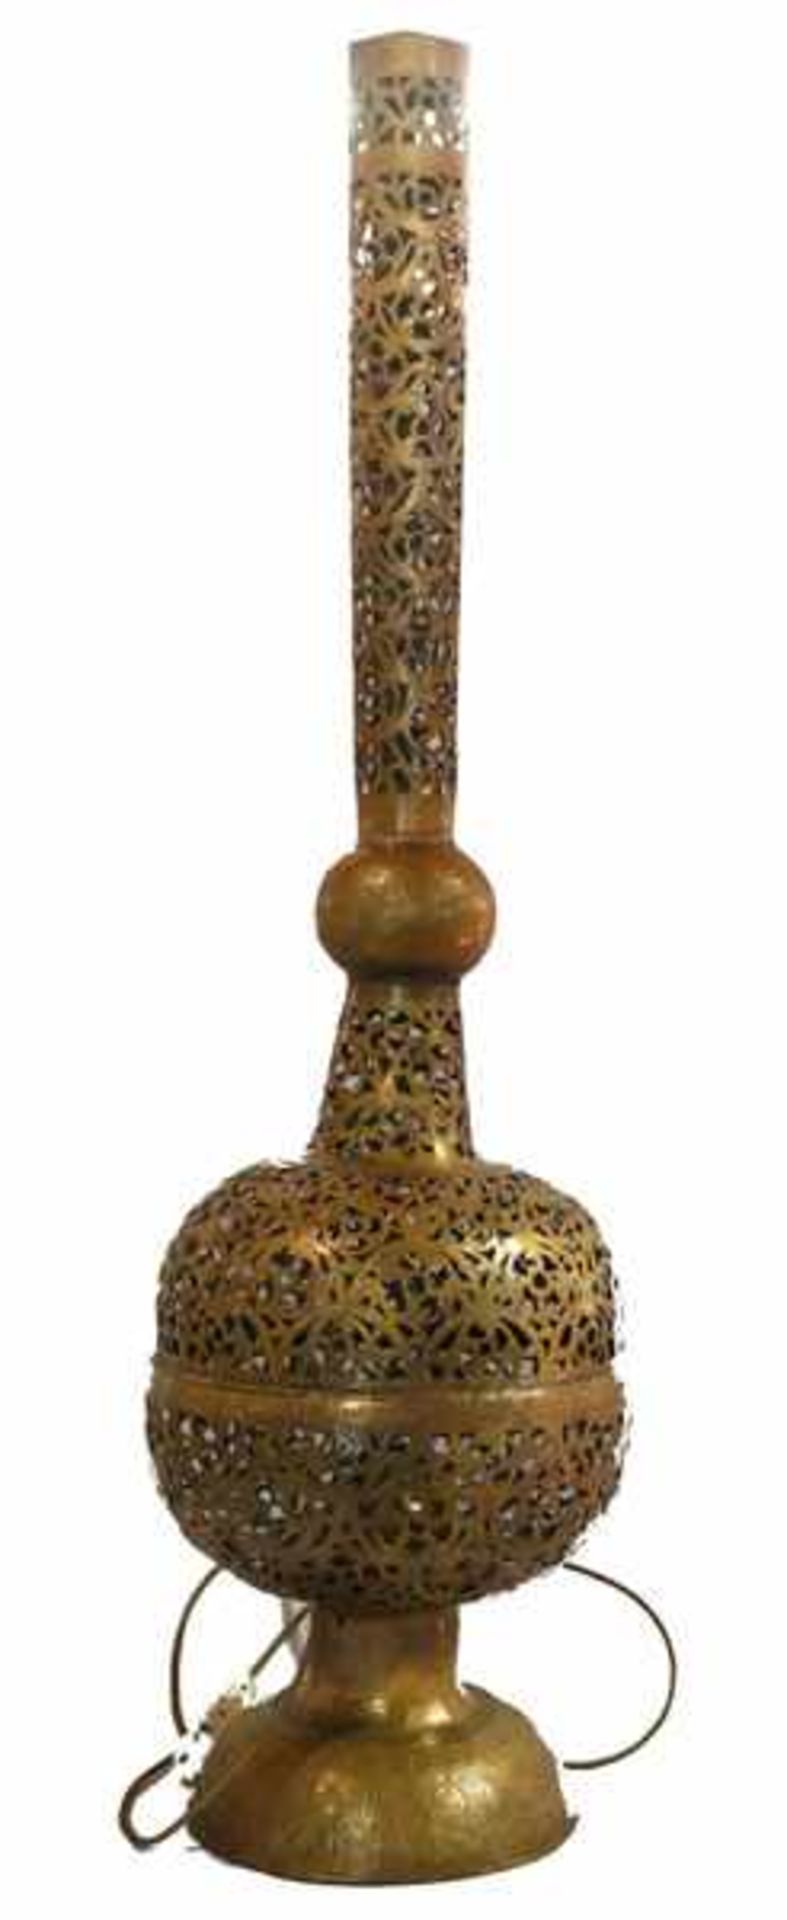 Ausgefallene Marokanische Stehlampe, Messing, handgearbeitet, H 133 cm, D 38 cm, Altersspuren